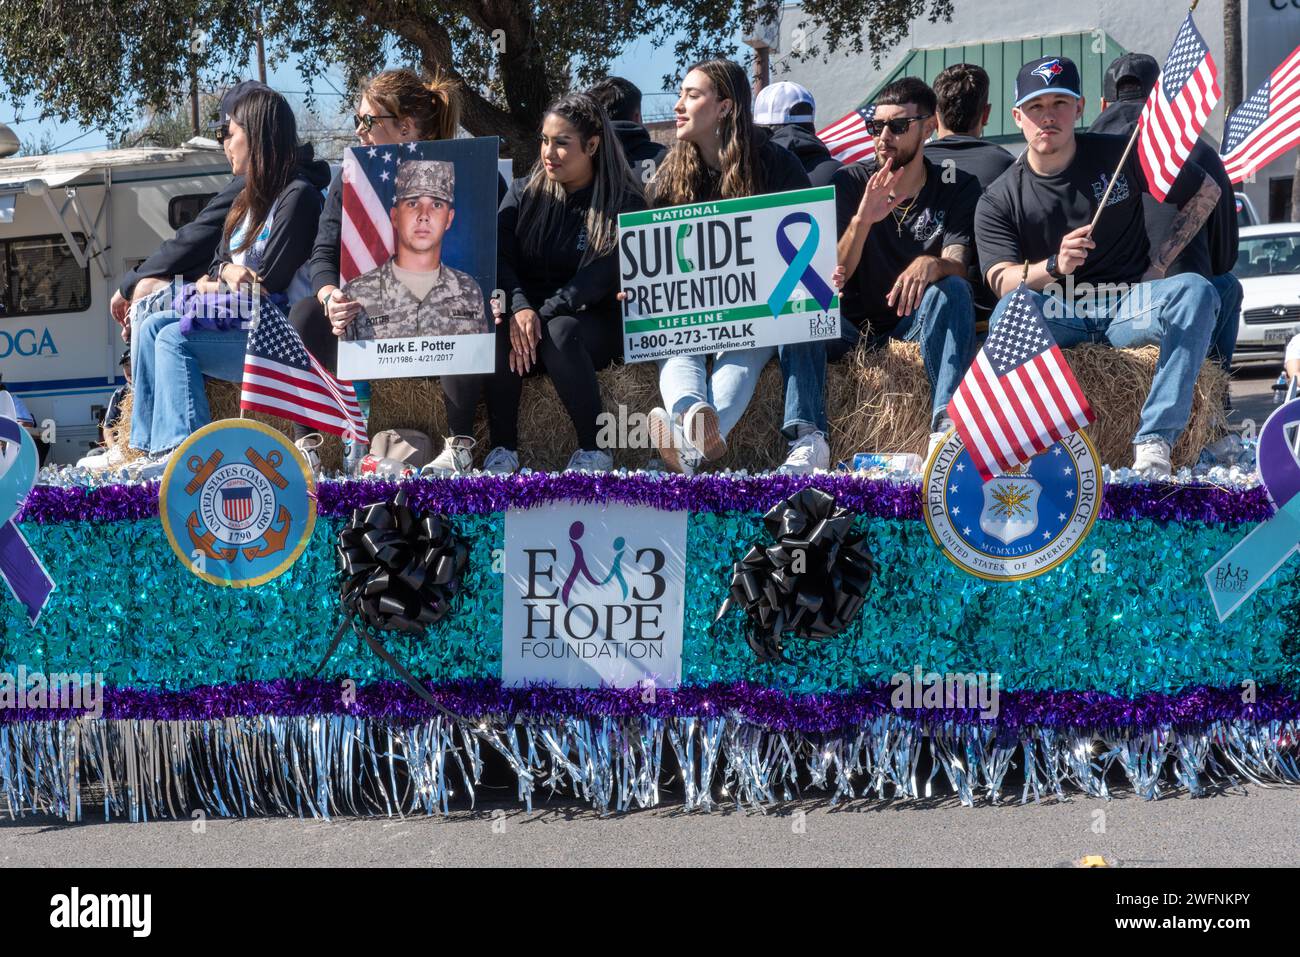 Défilé de couleur turquoise avec drapeaux américains pour la prévention du suicide, EM3 Hope, dans la 92e édition annuelle Texas Citrus Fiesta Parade d'oranges, Mission TX USA. Banque D'Images